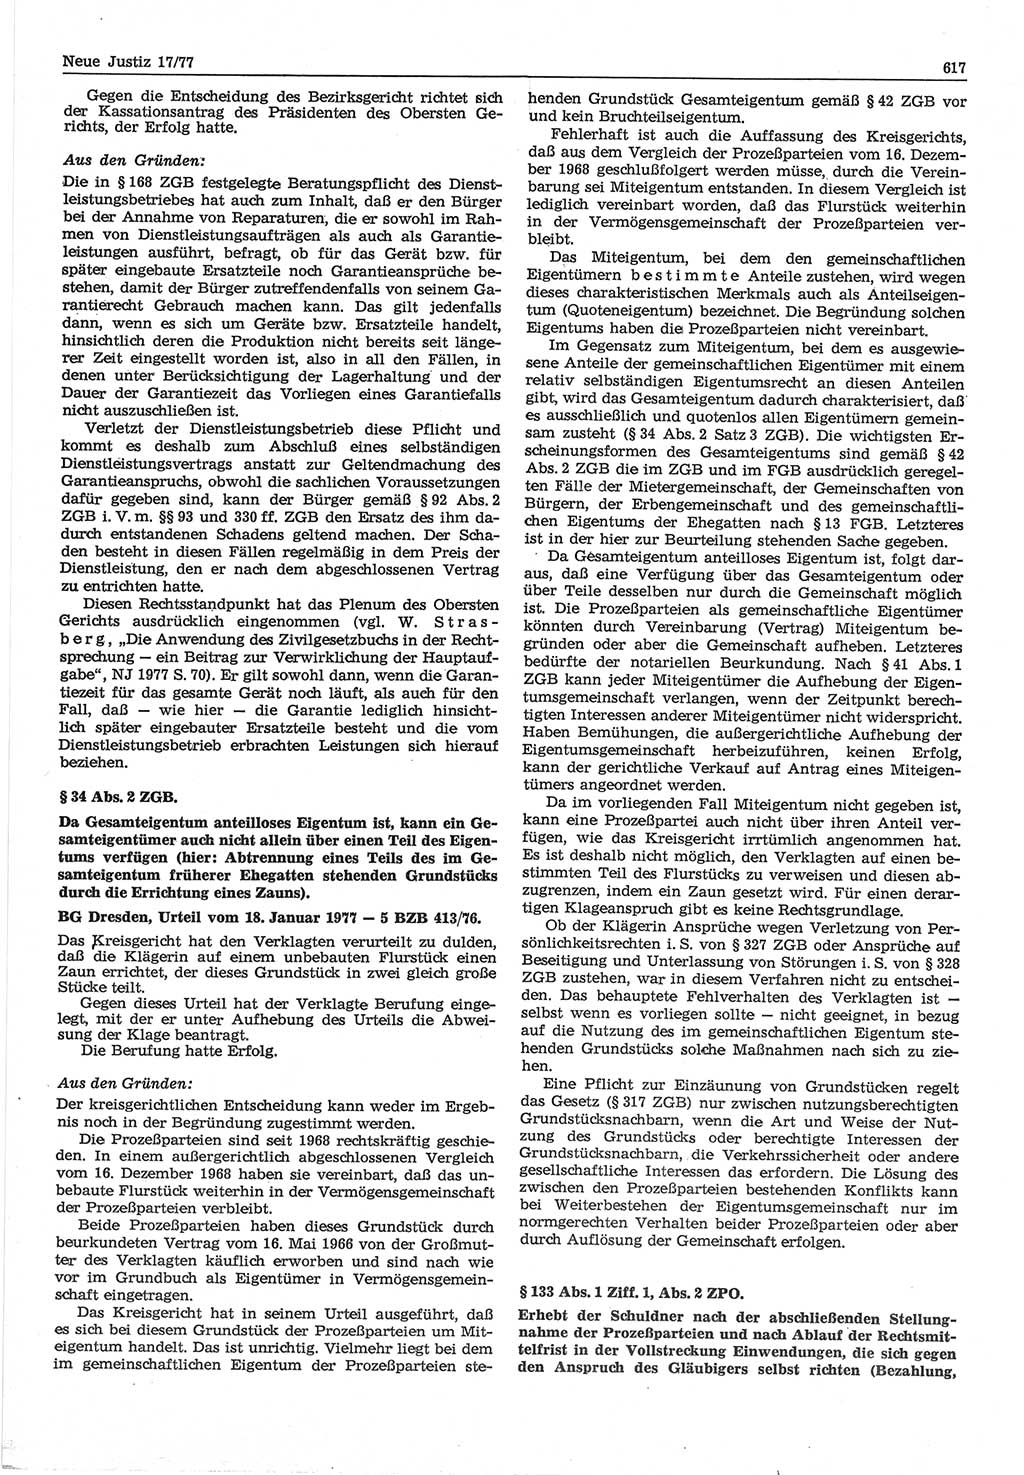 Neue Justiz (NJ), Zeitschrift für Recht und Rechtswissenschaft-Zeitschrift, sozialistisches Recht und Gesetzlichkeit, 31. Jahrgang 1977, Seite 617 (NJ DDR 1977, S. 617)